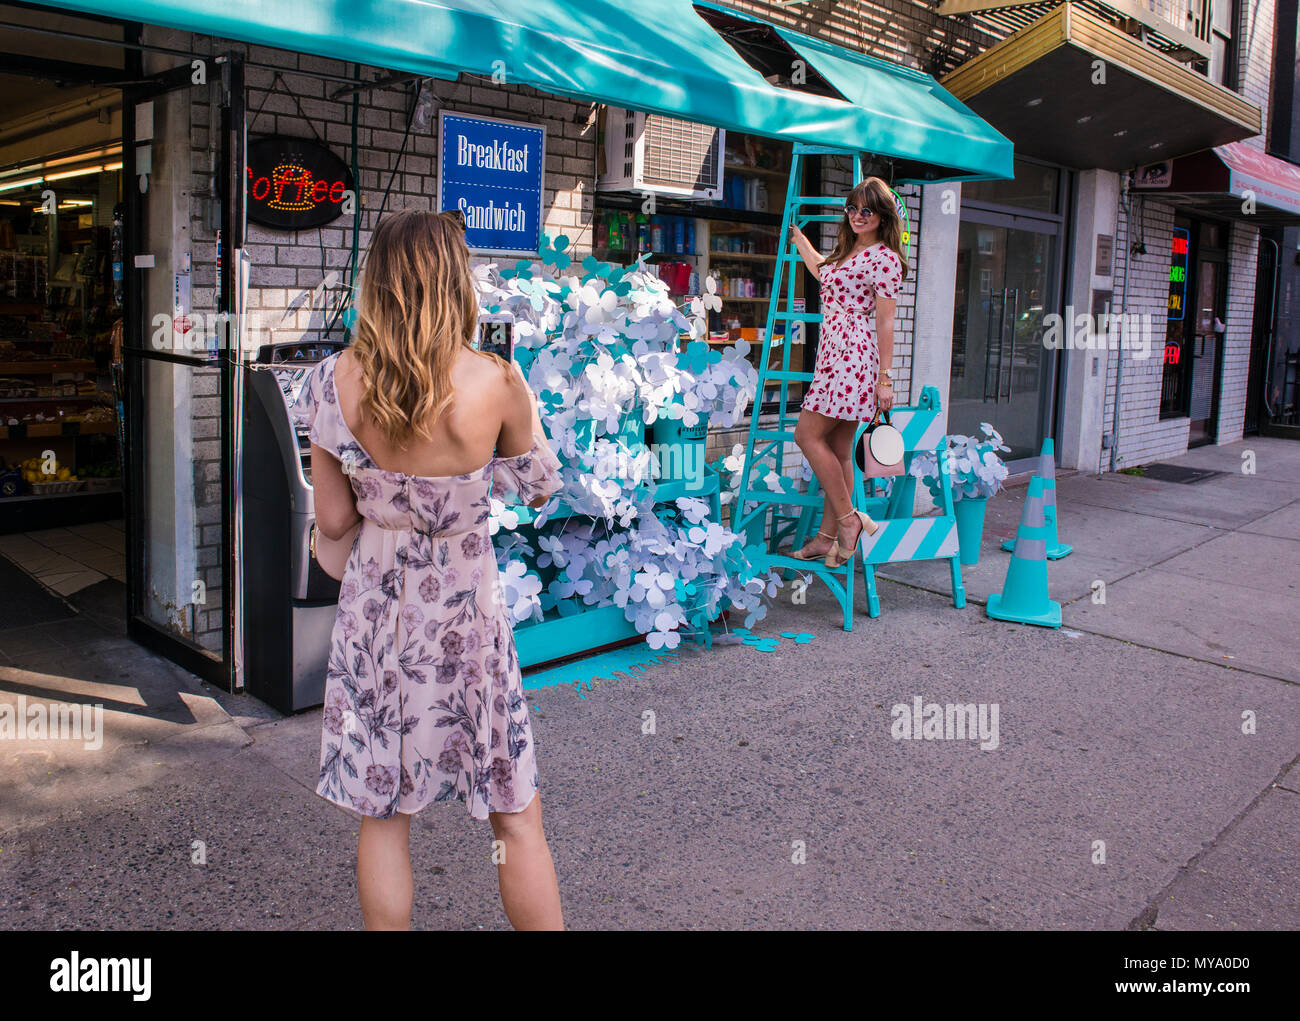 Giovane donna di fotografare il suo amico stando in piedi sulla scala, al di fuori del negozio, entrambe le donne indossano motivi floreali abiti, New York City, Stati Uniti d'America Foto Stock